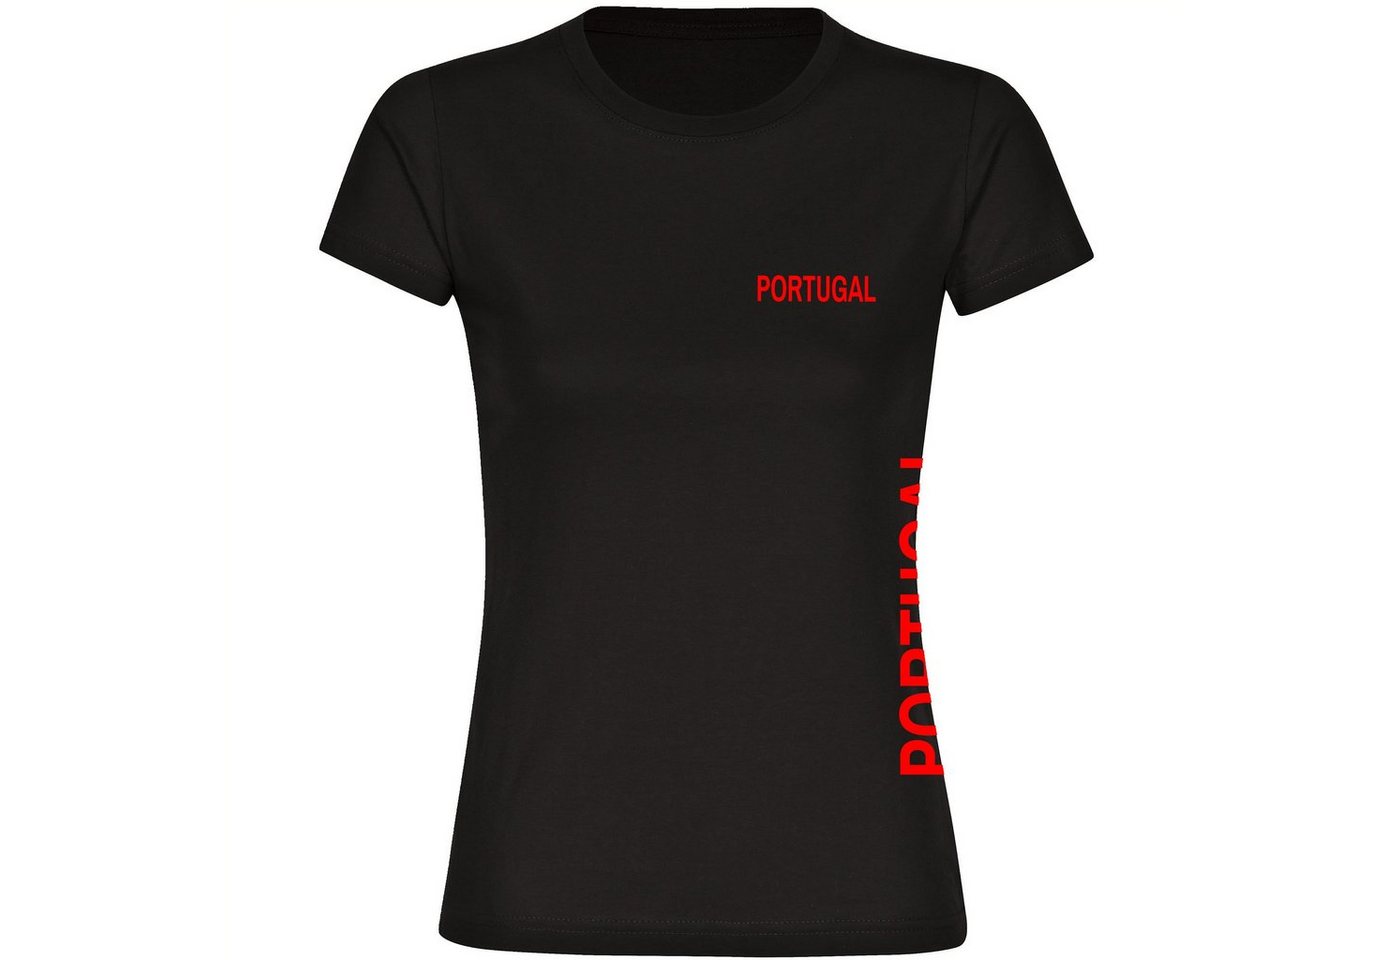 multifanshop T-Shirt Damen Portugal - Brust & Seite - Frauen von multifanshop